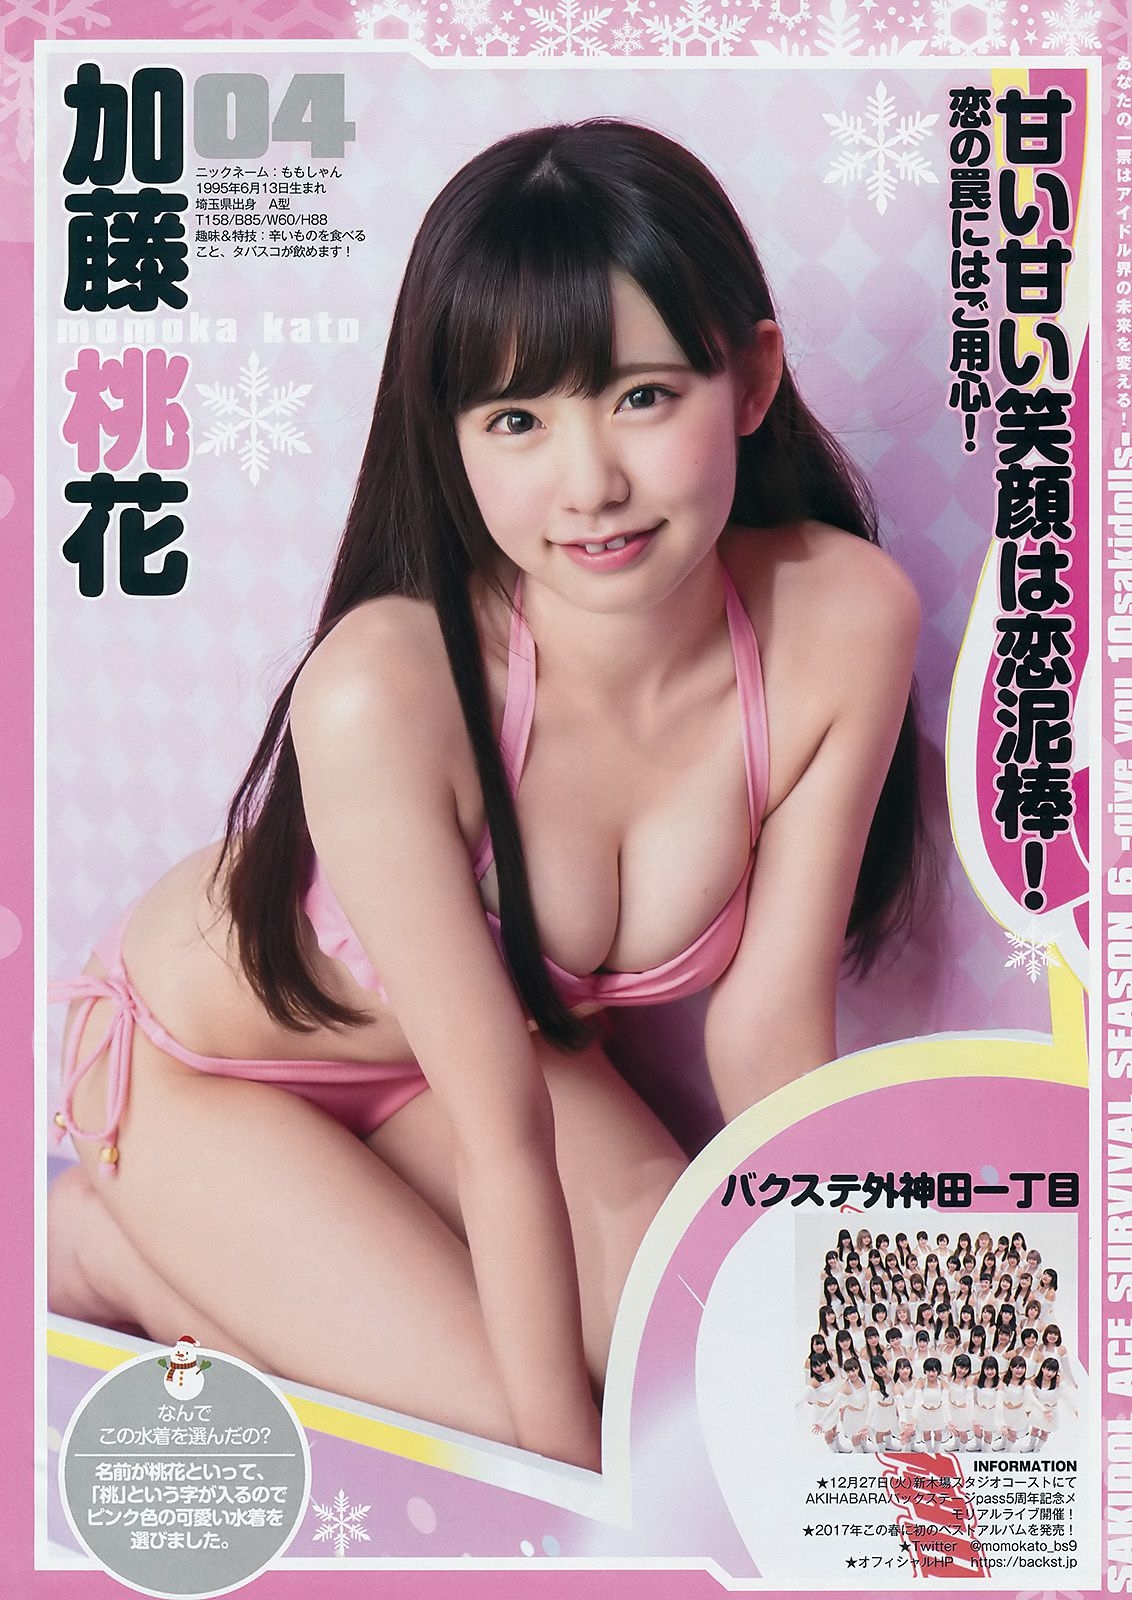 サキドルエースSURVIVAL SEASON6《give you 10sakidolls》 [Weekly Young Jump] 2017年No.03-04 写真杂志 